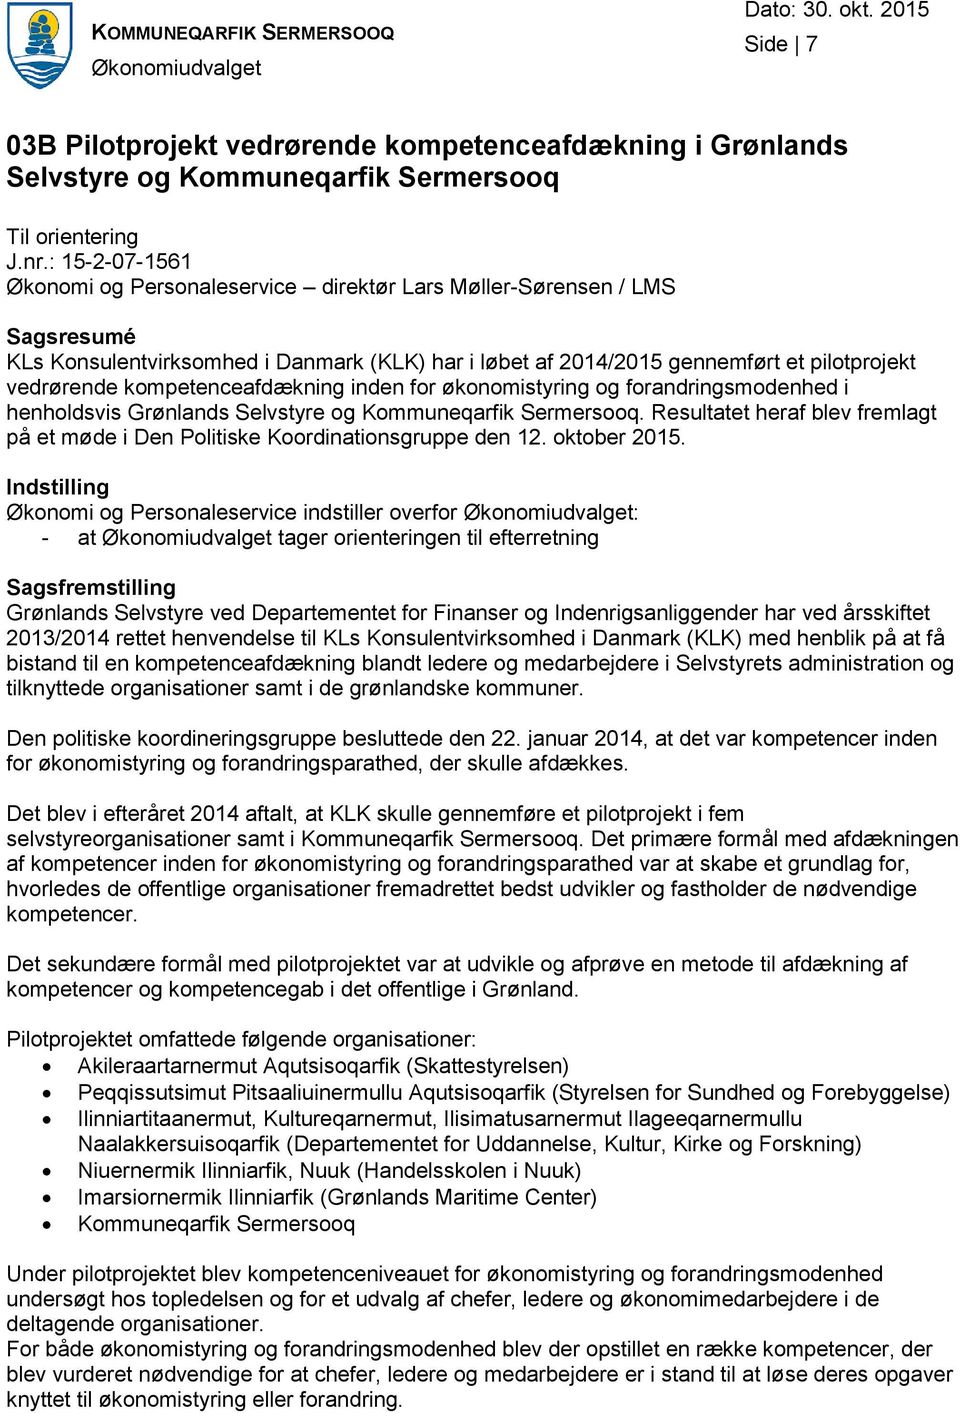 kompetenceafdækning inden for økonomistyring og forandringsmodenhed i henholdsvis Grønlands Selvstyre og Kommuneqarfik Sermersooq.